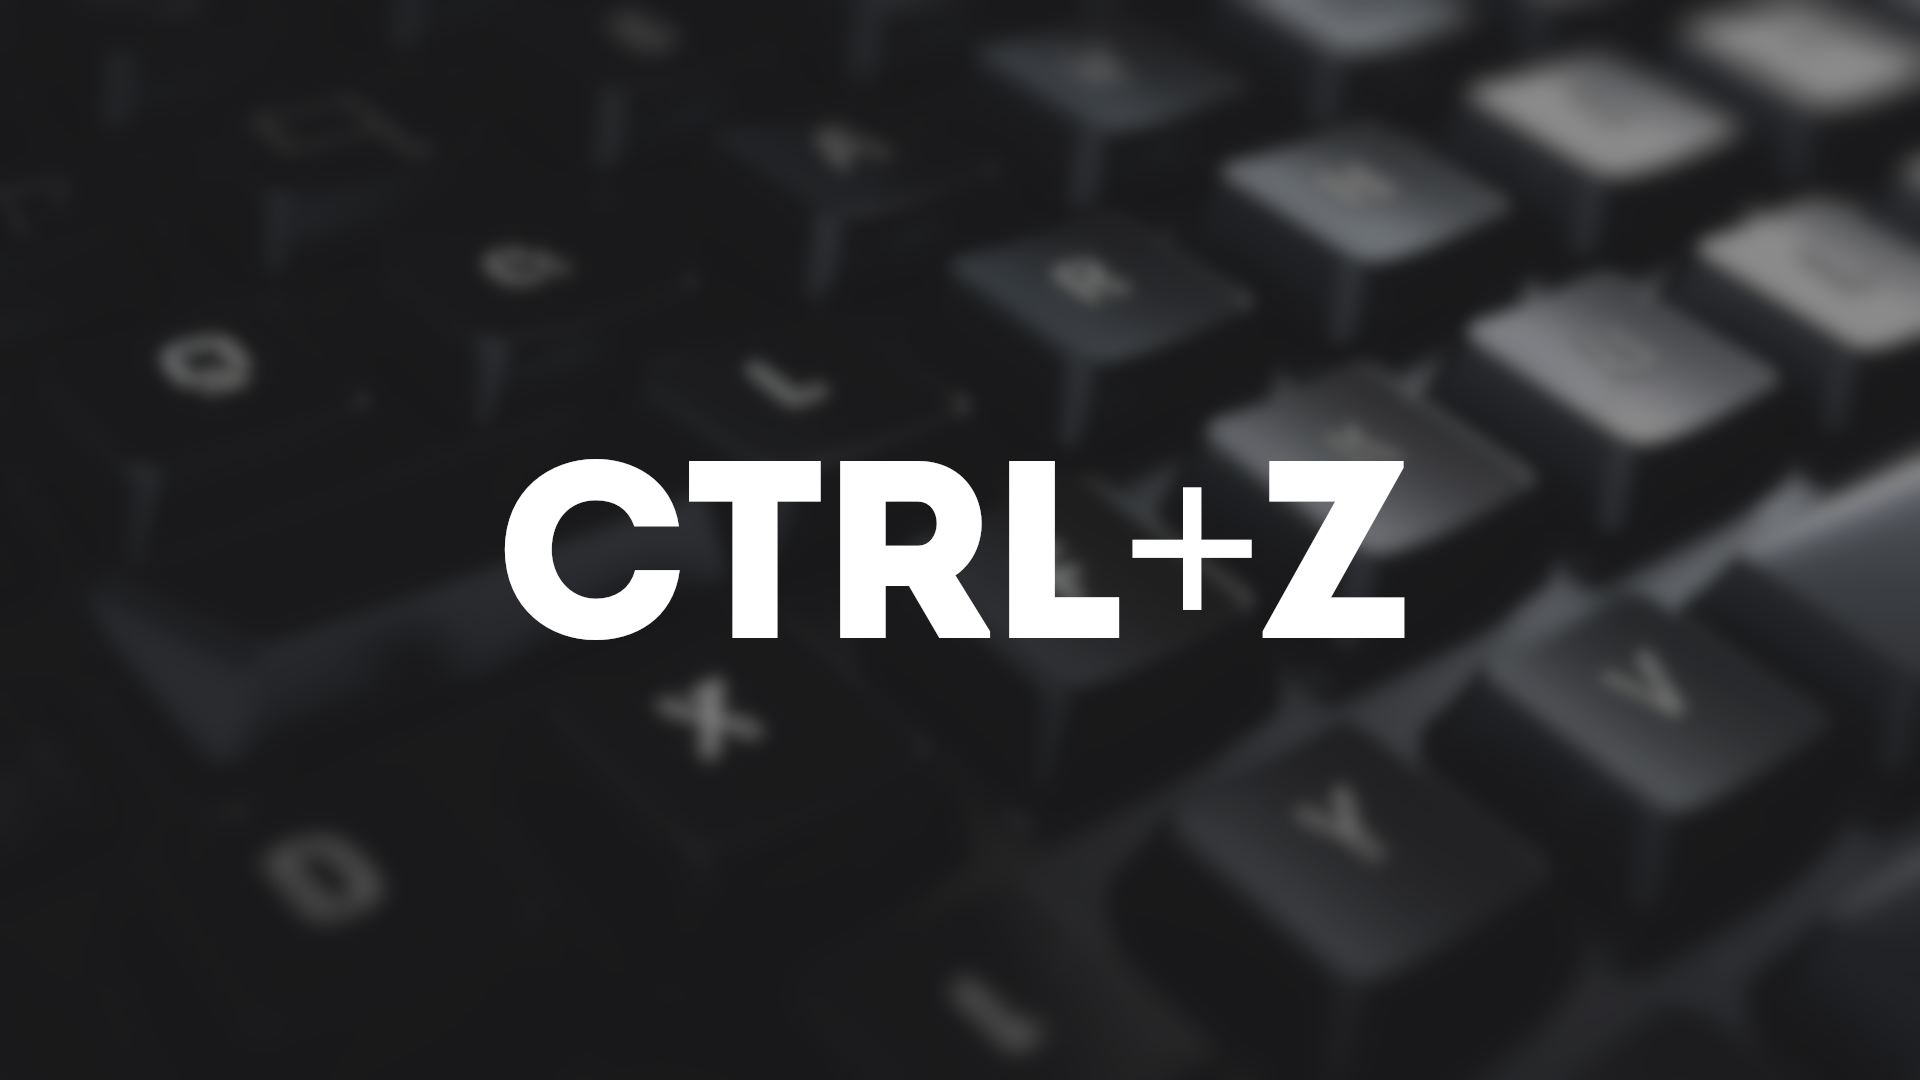 CTRL+Z  Сочетание клавиш на windows 10. Горячие клавиши на компьютере.